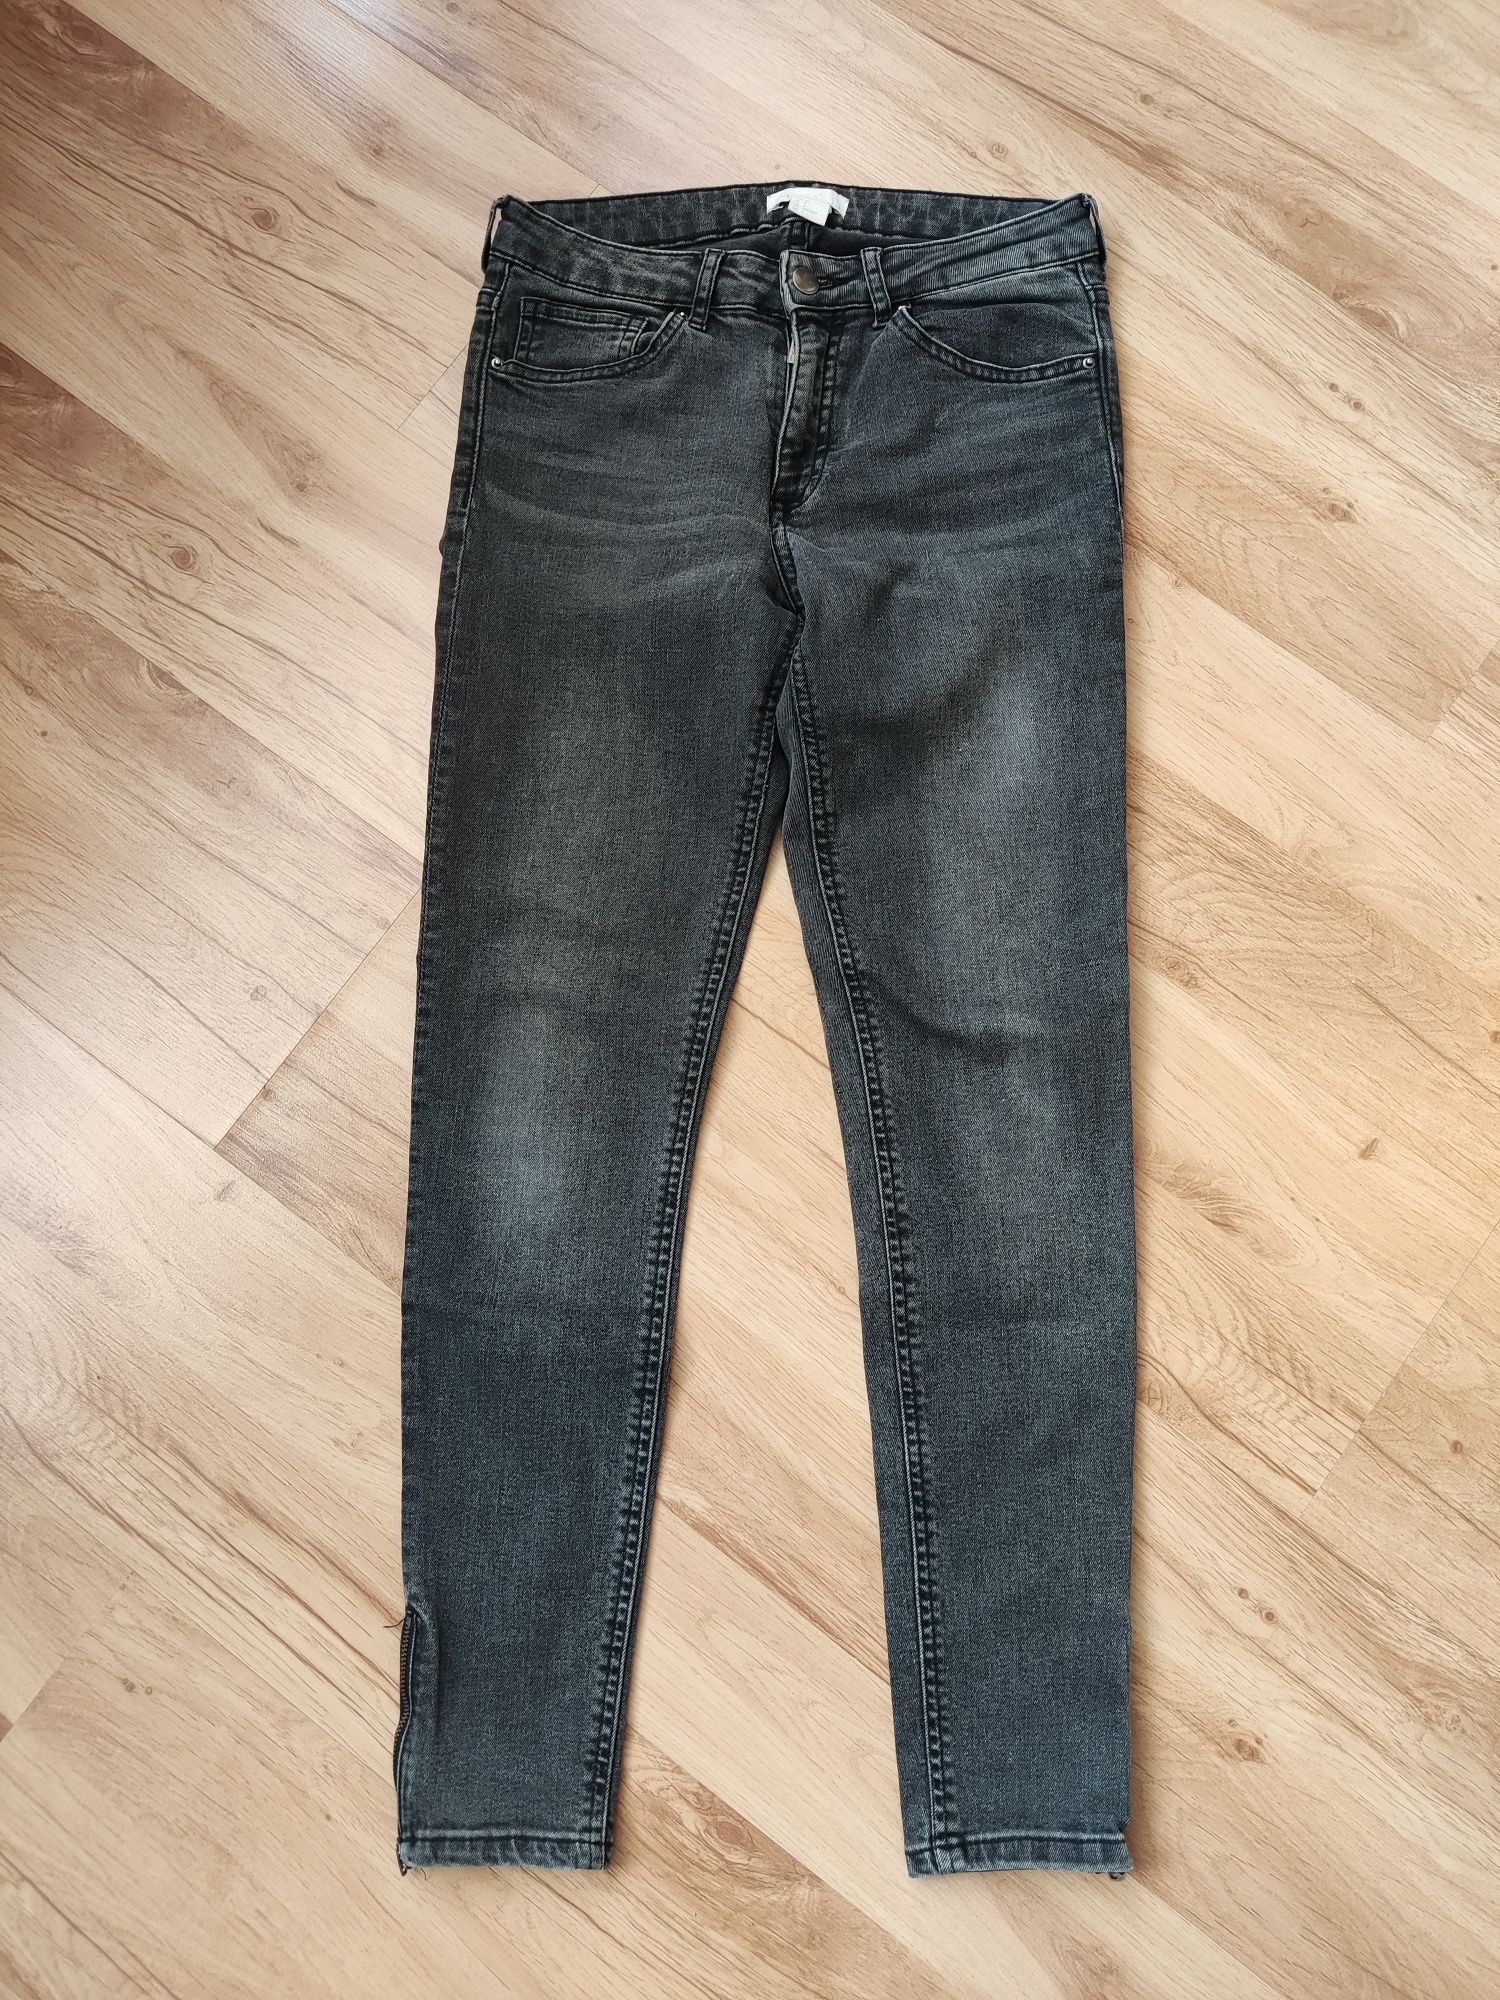 Spodnie jeansowe H&M rozmiar 36